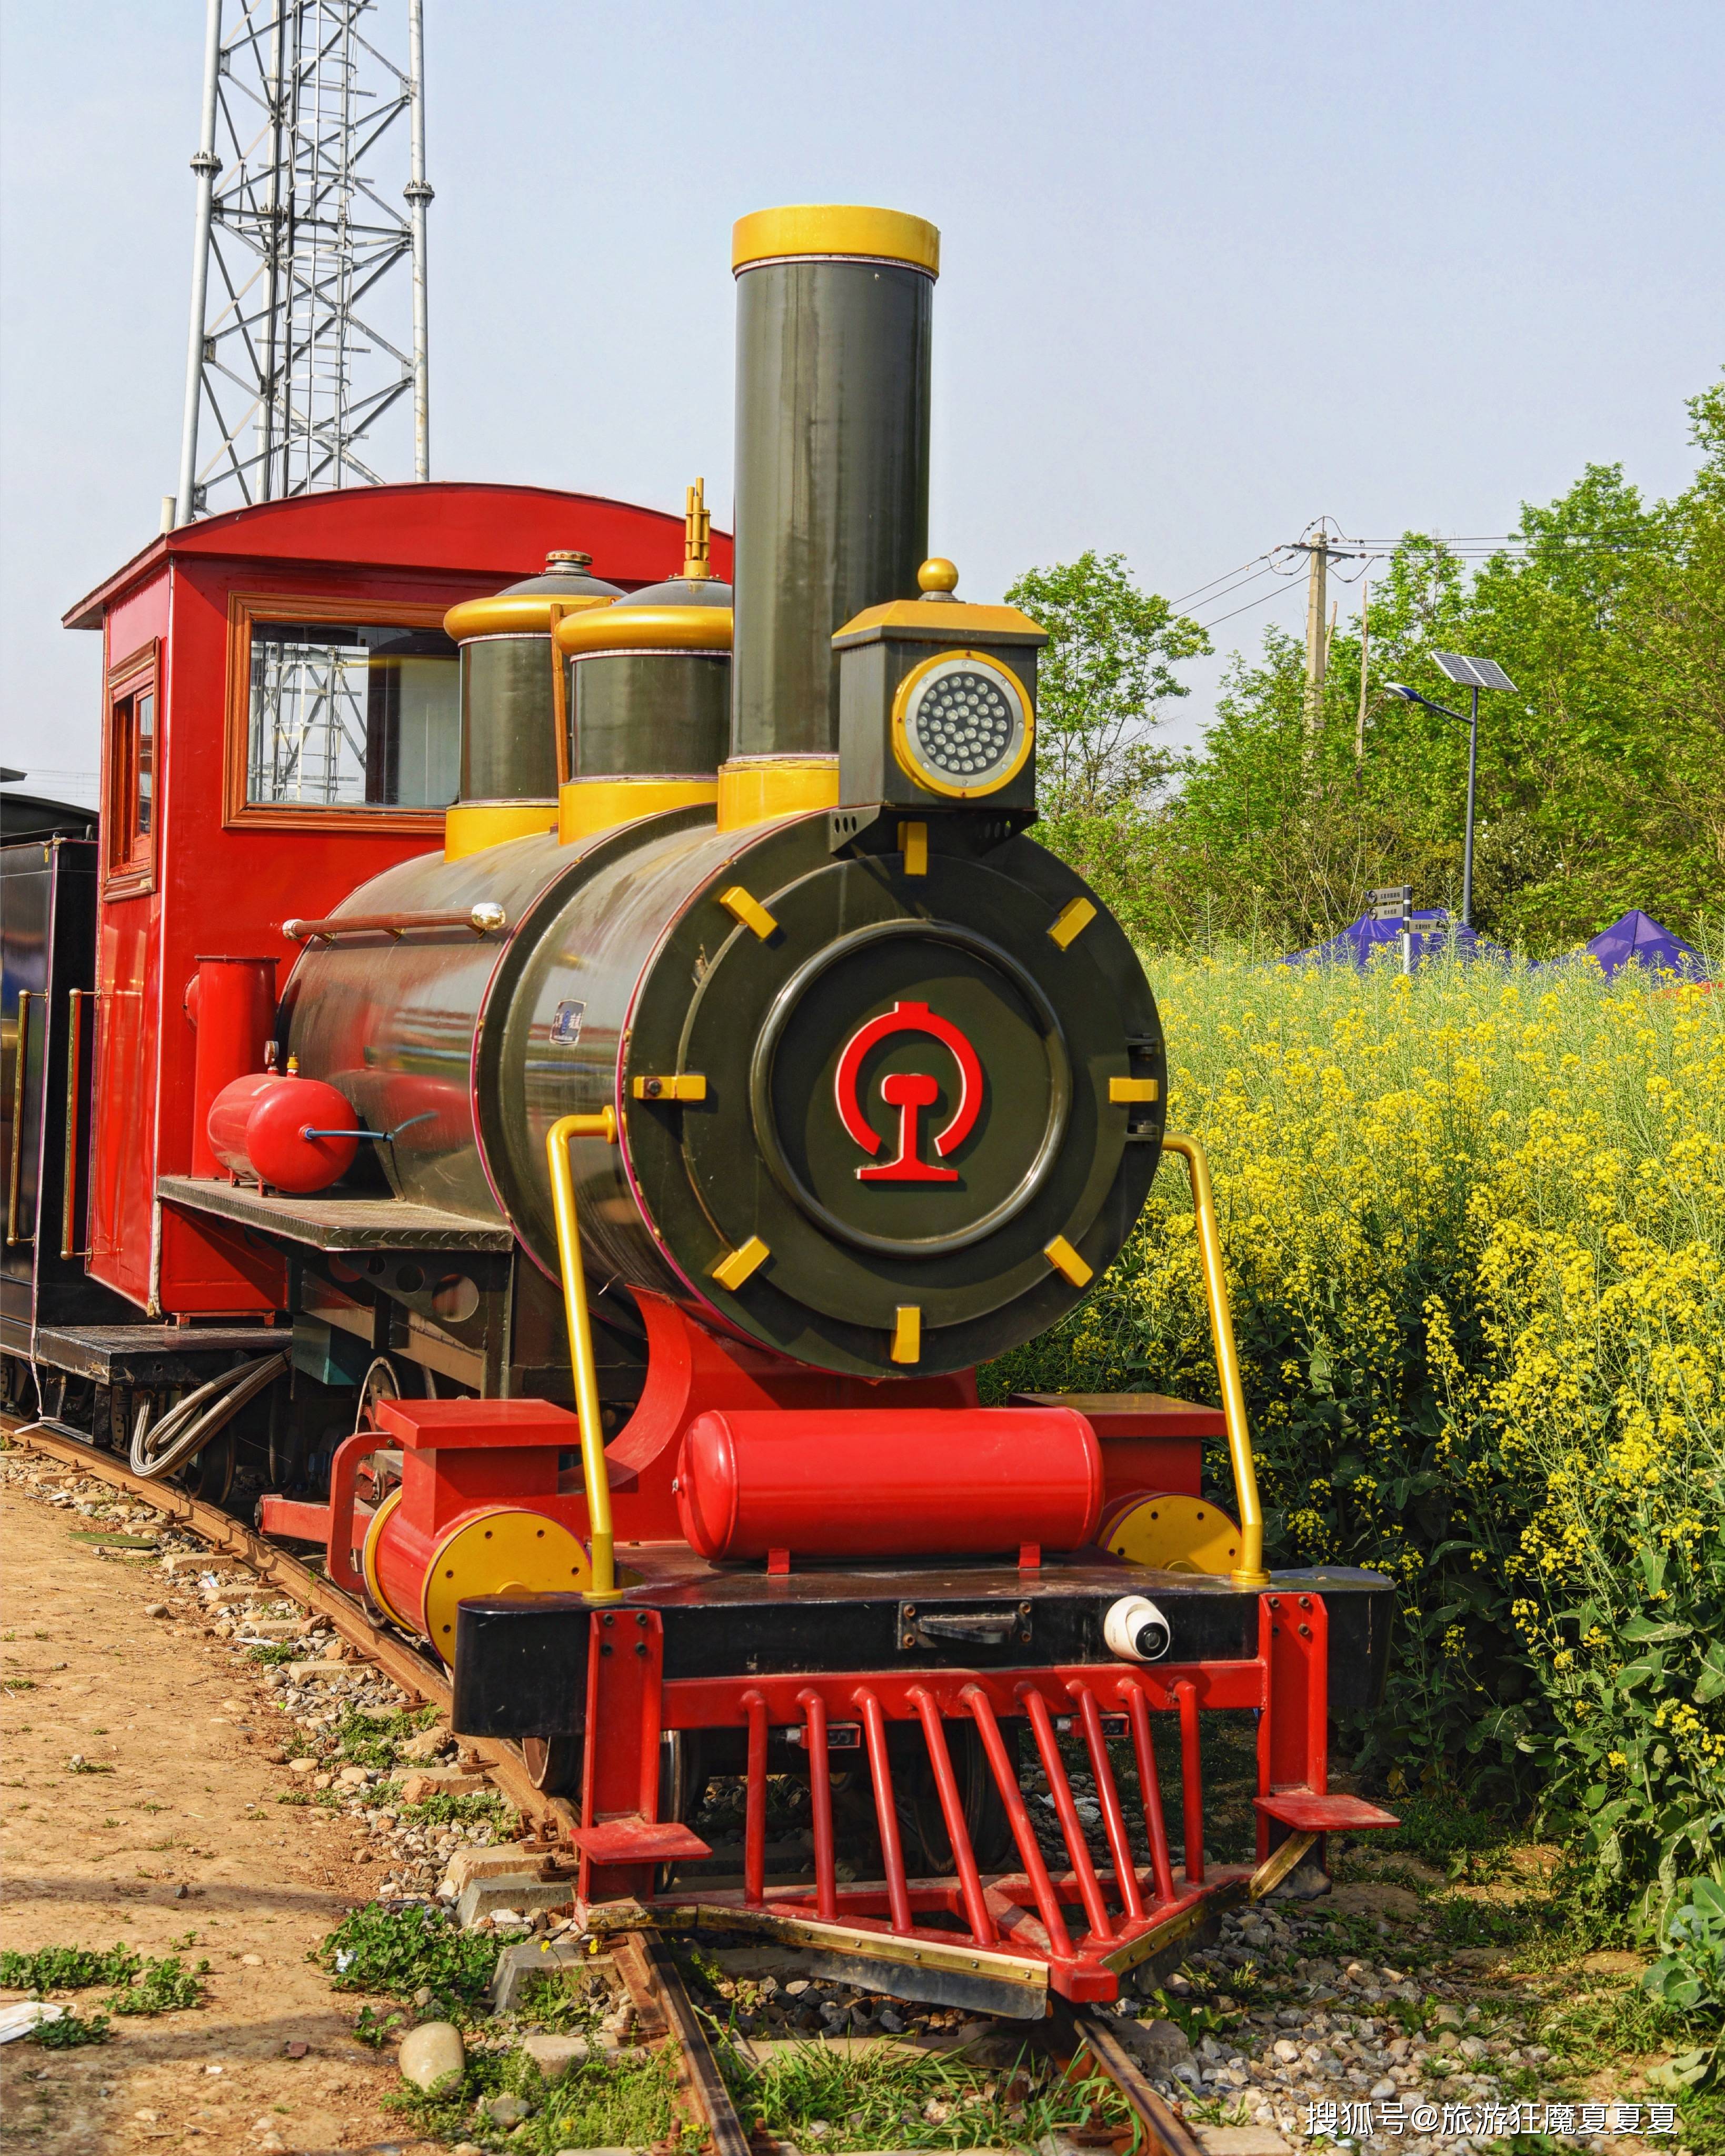 四川崇州开往春天的小火车，在油菜花海中穿行，还能与高铁相汇